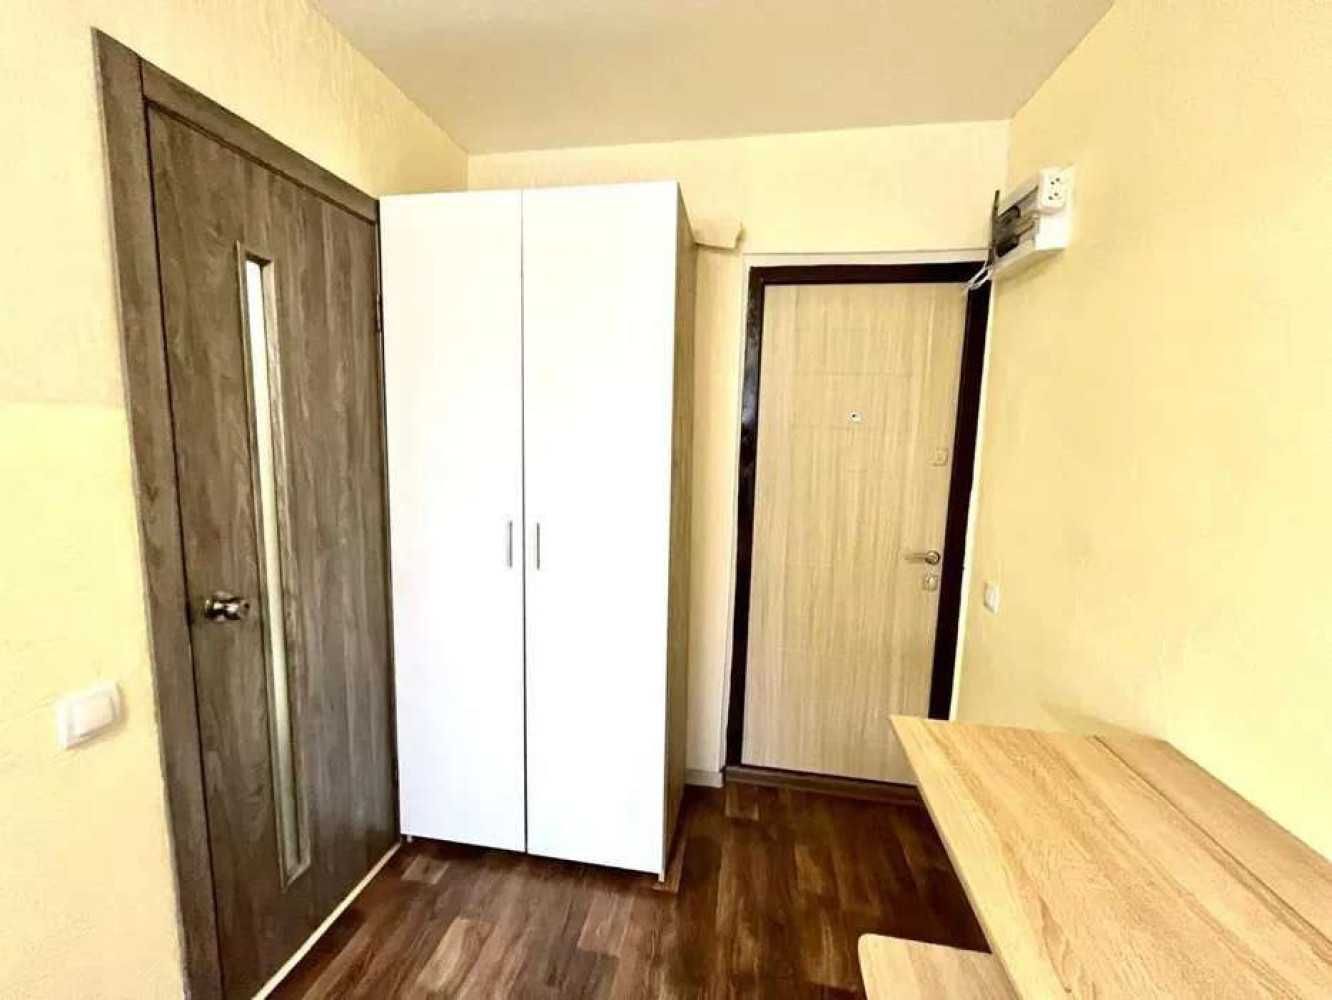 Продам 4-х комнатную квартиру в Лузановке